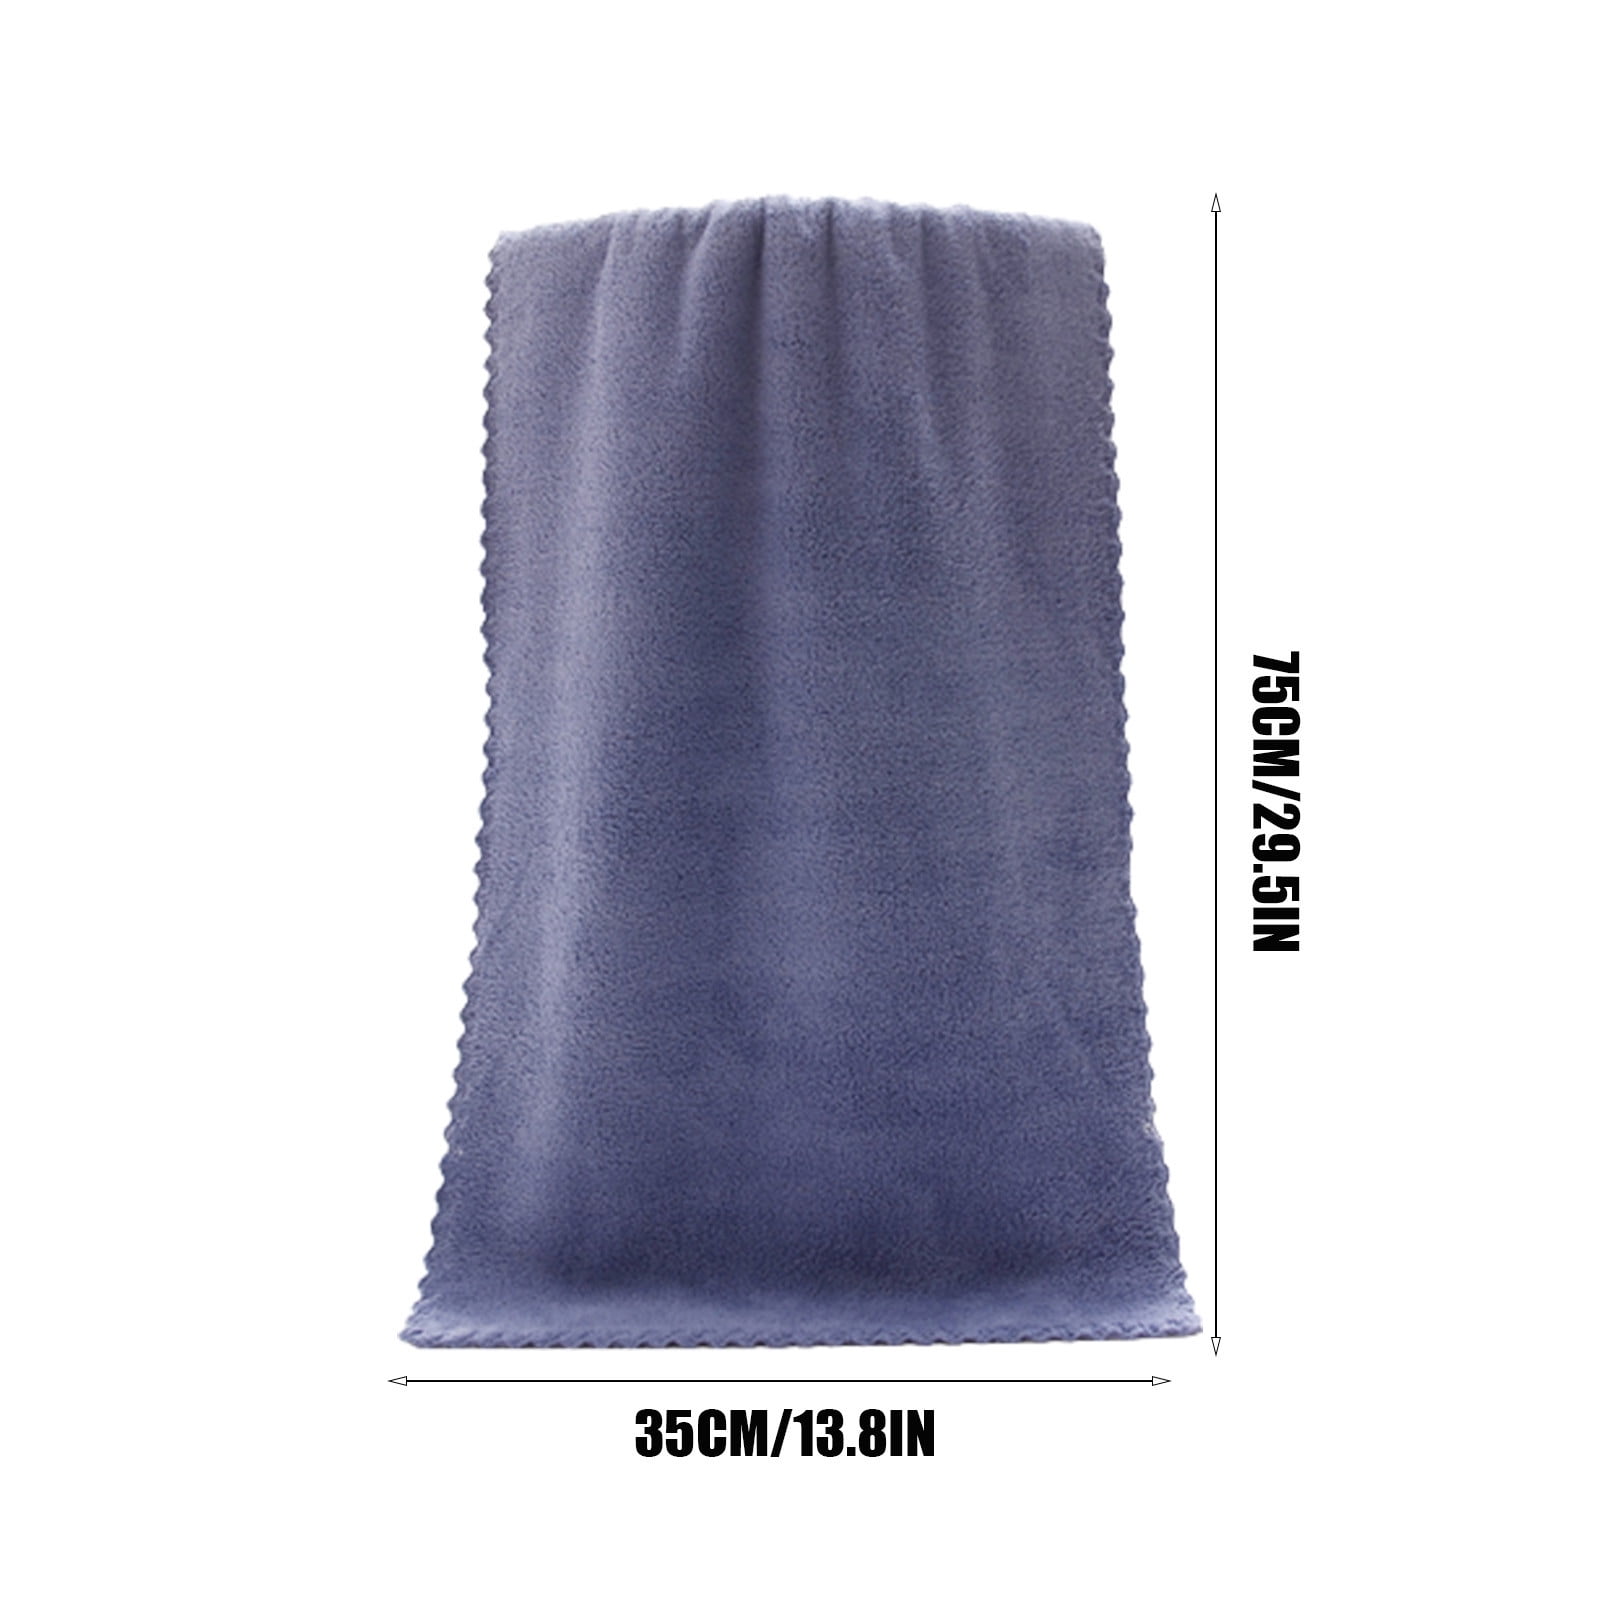 Luxe Absorbent Towel – HIKOTA